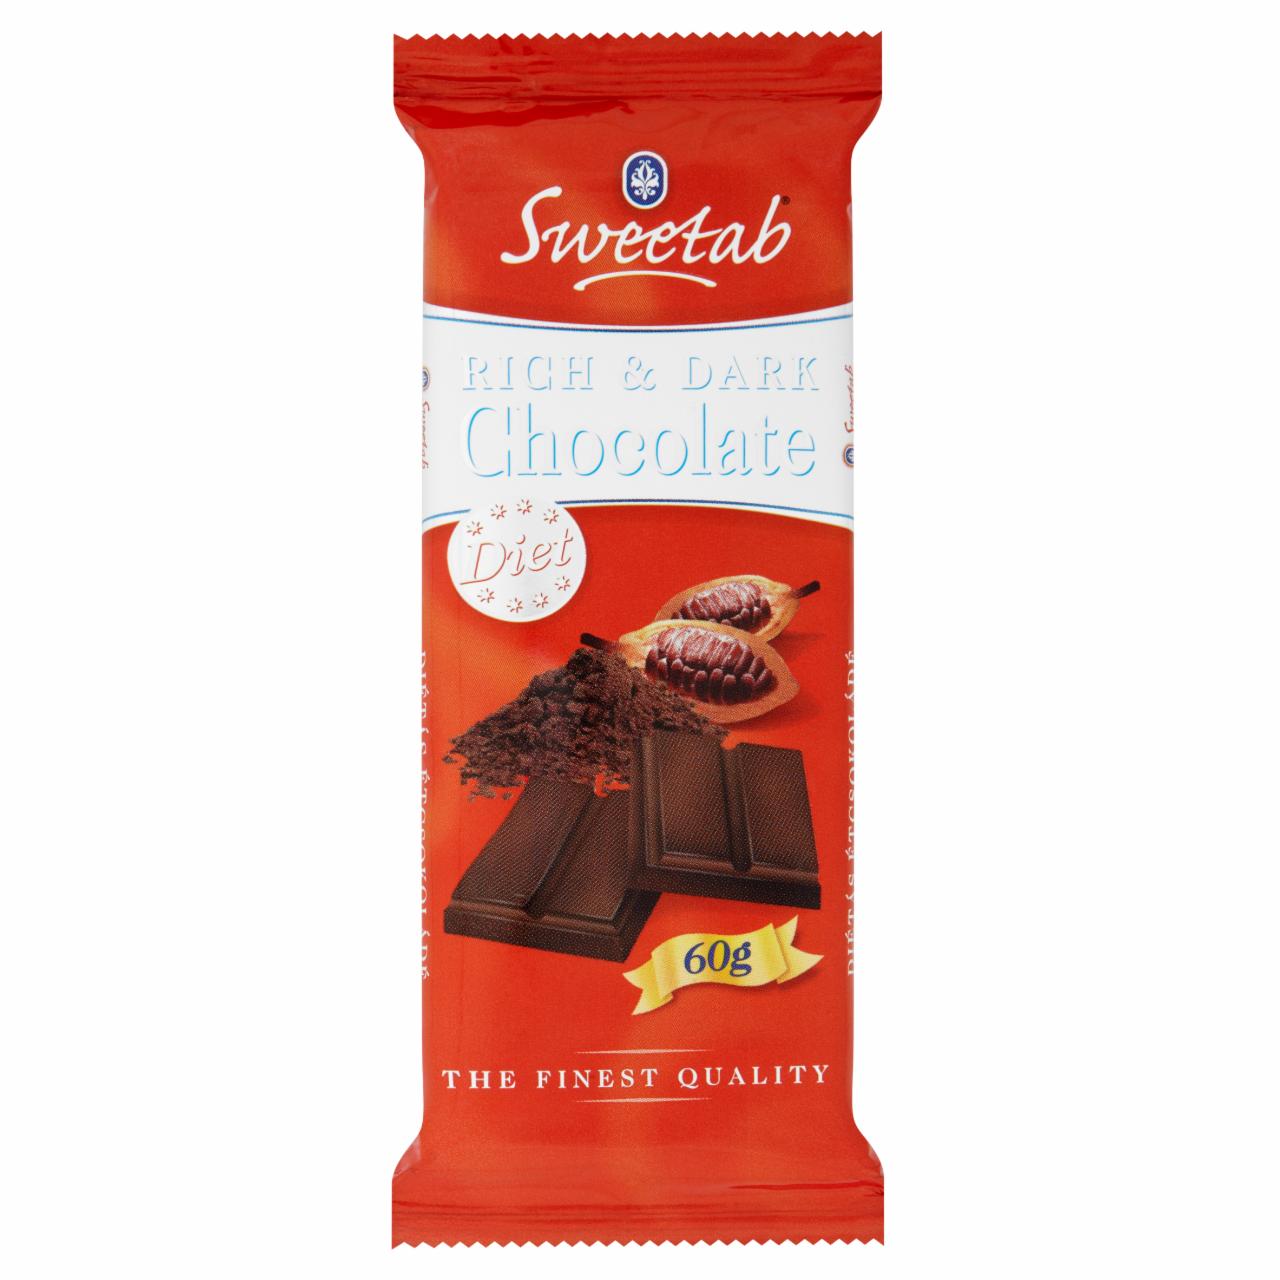 Képek - Sweetab étcsokoládé édesítőszerrel 60 g